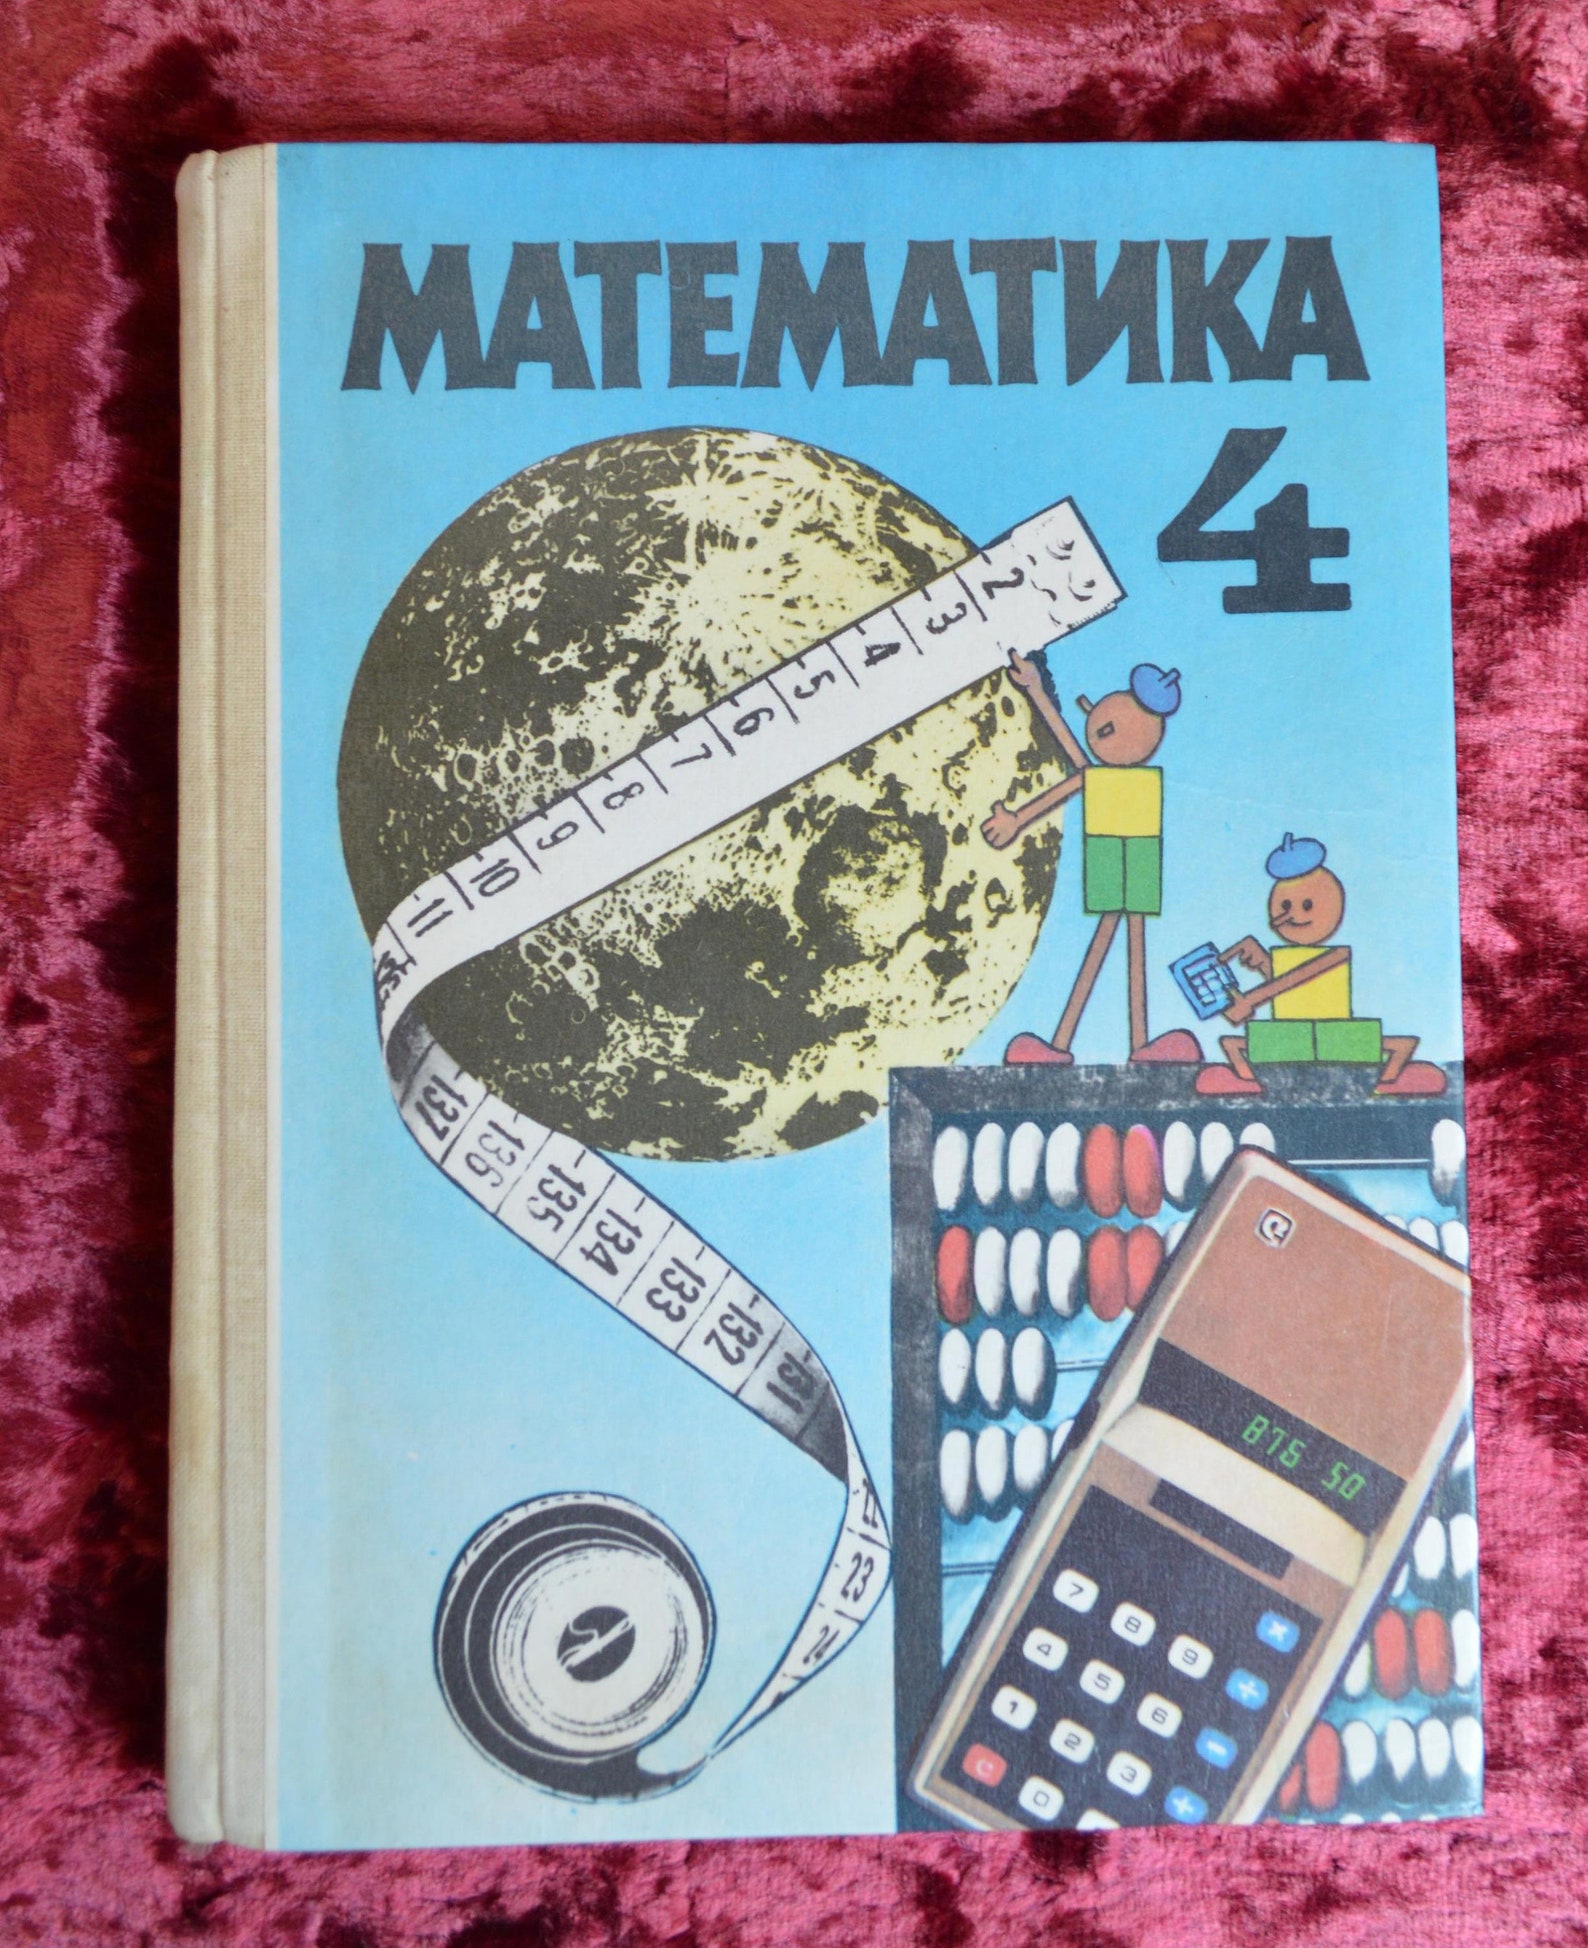 Учебник математики СССР. Учебник по математике 1990 года. Учебник математике 4 класс 1990 года. Математика 4 класс СССР учебник.